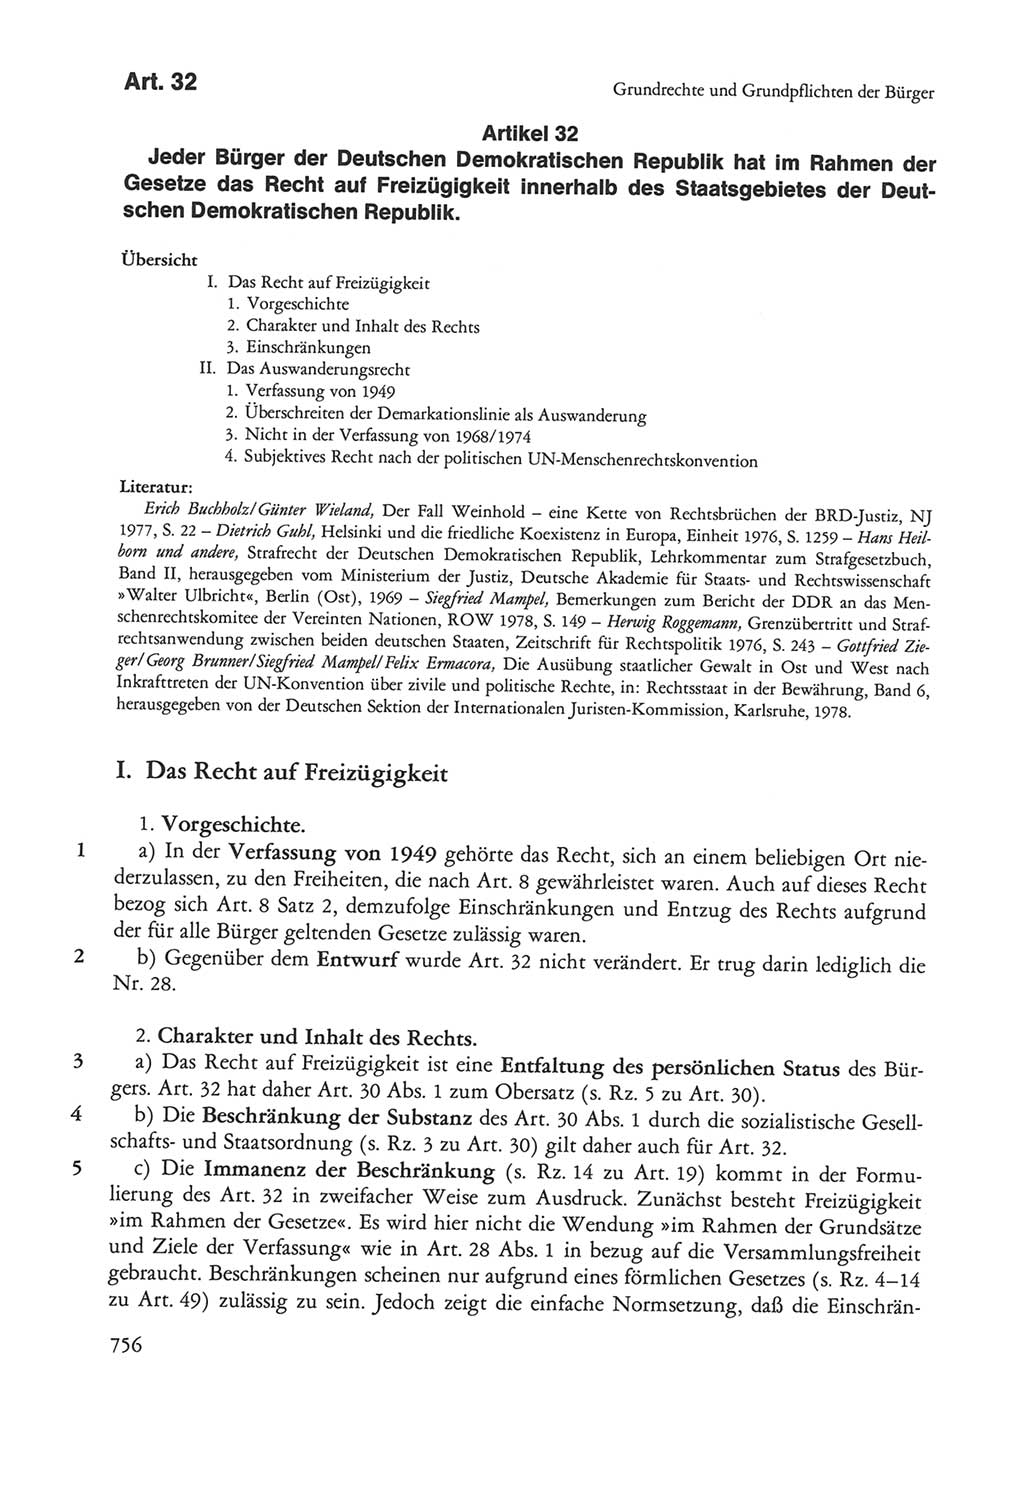 Die sozialistische Verfassung der Deutschen Demokratischen Republik (DDR), Kommentar 1982, Seite 756 (Soz. Verf. DDR Komm. 1982, S. 756)